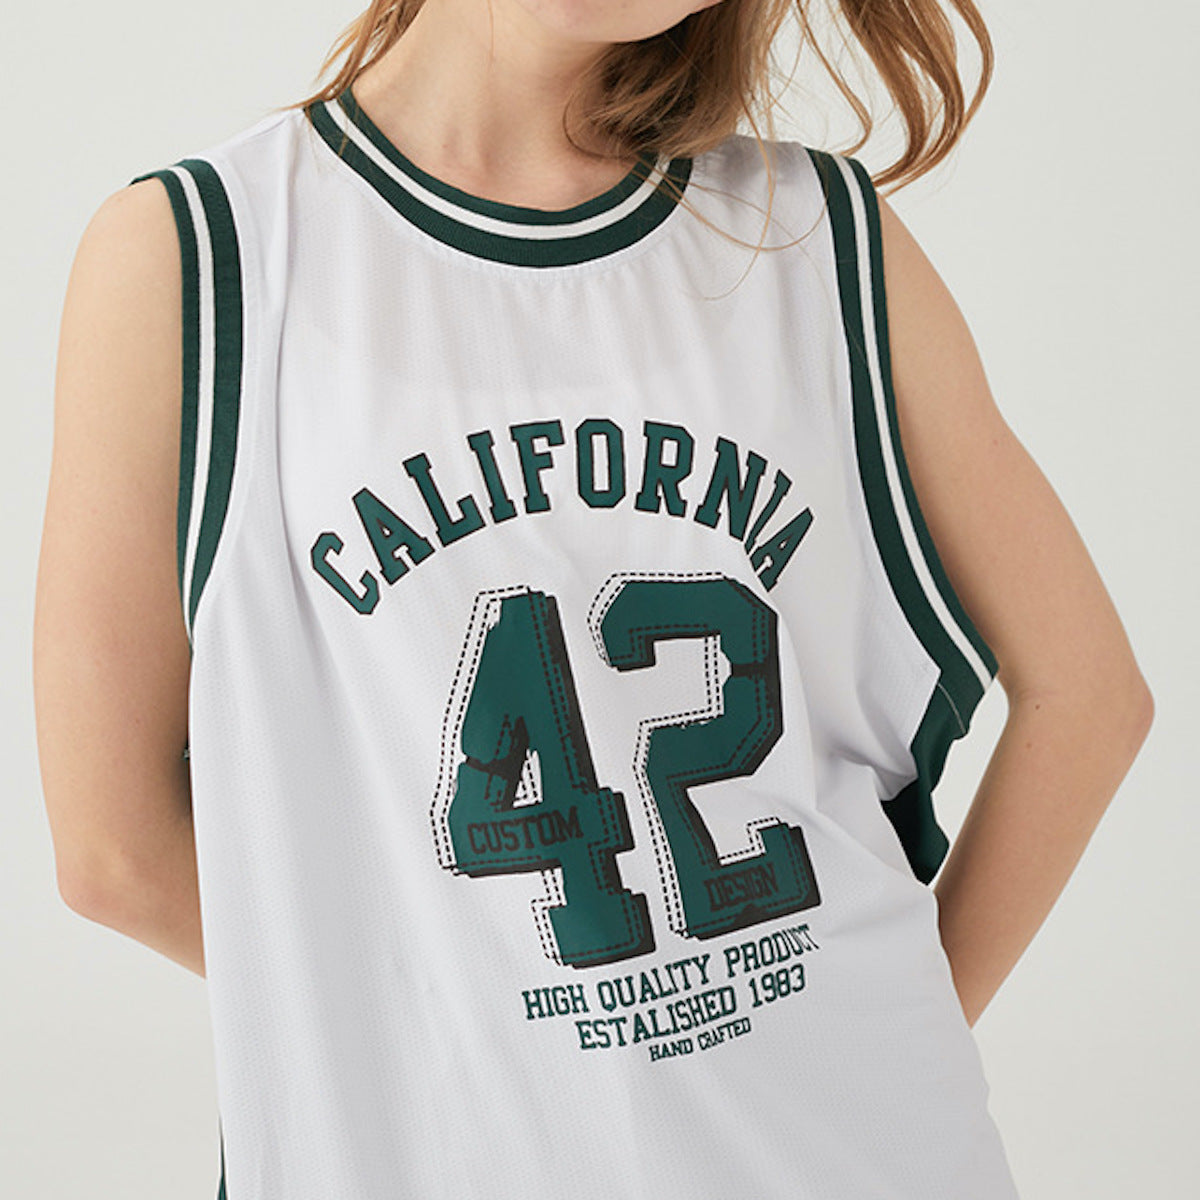 【ペアルック】CALIFORNIAロゴバスケットボールトップス